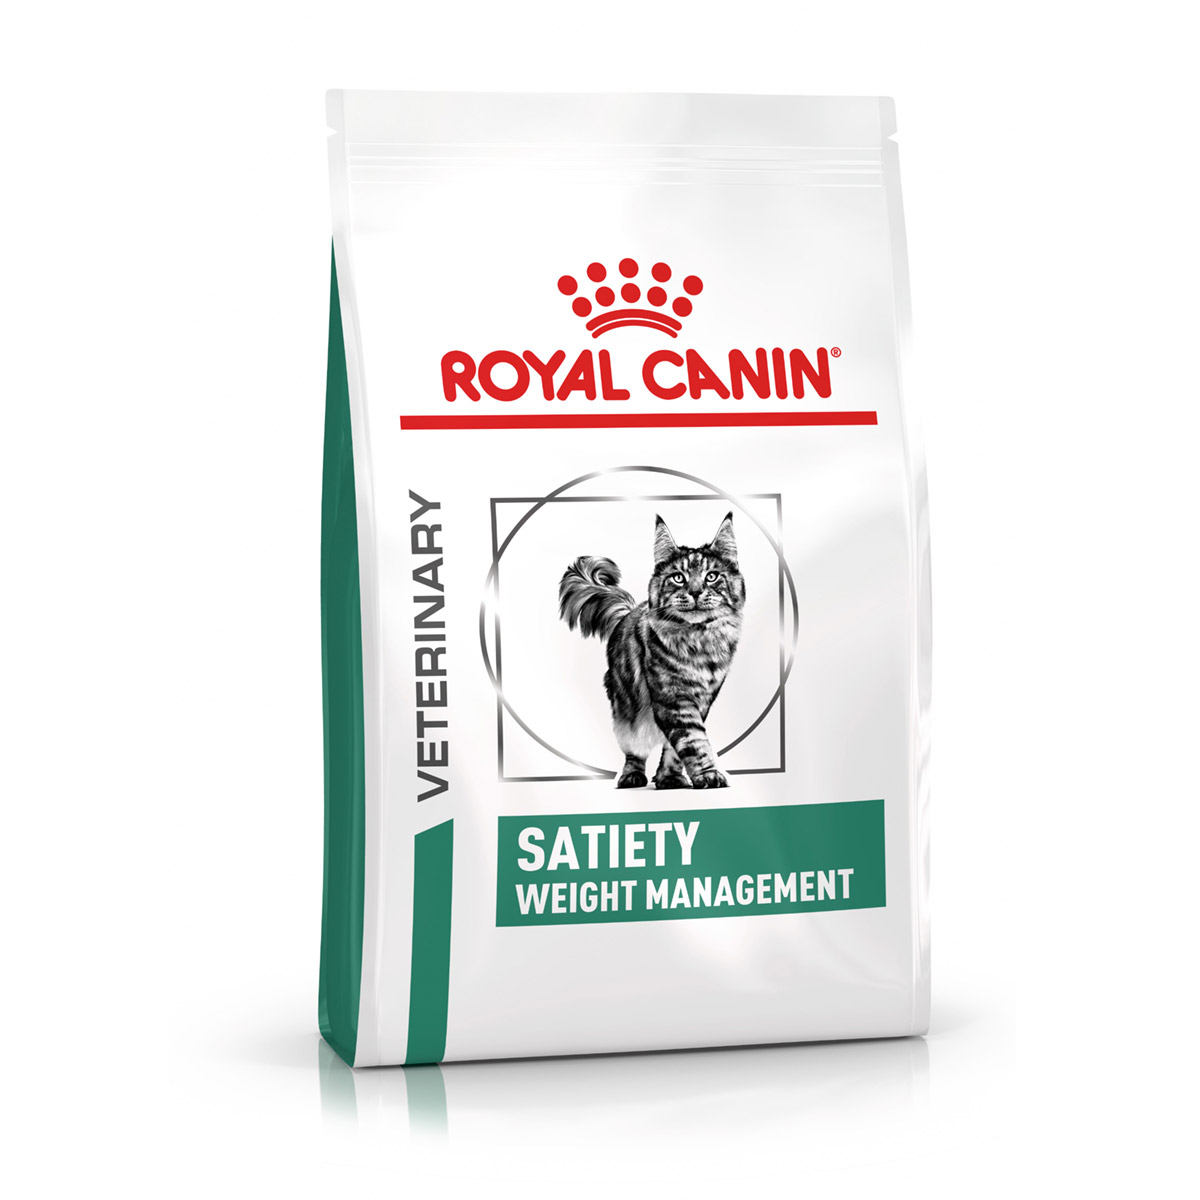 ROYAL CANIN® Veterinary SATIETY WEIGHT MANAGEMENT Trockenfutter für Katzen 1,5kg